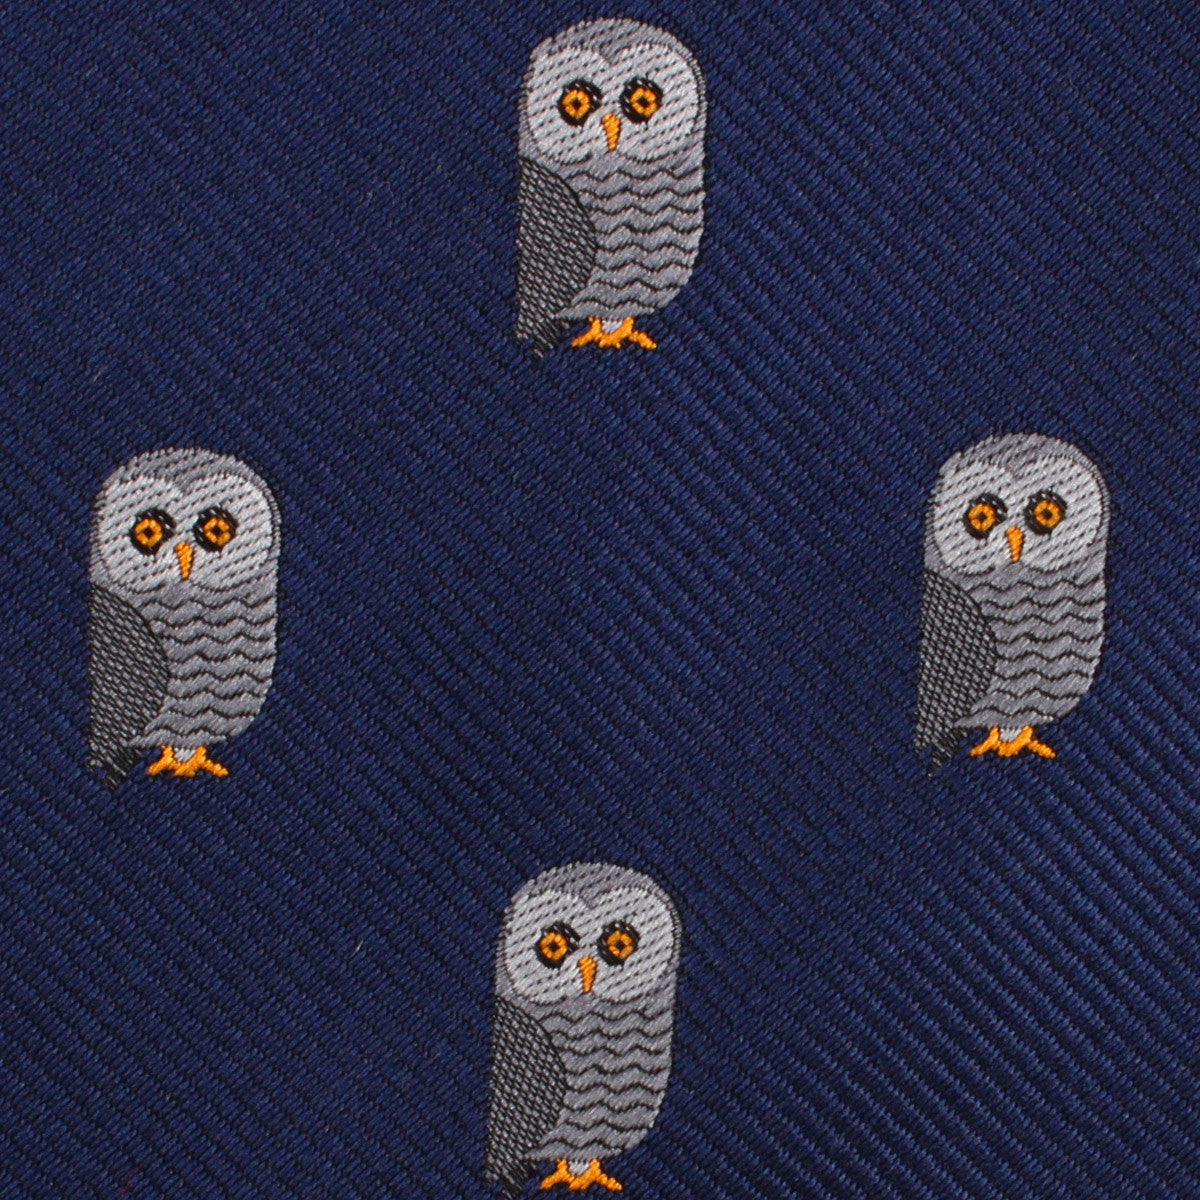 Southern Grey Owl Fabric Kids Bowtie